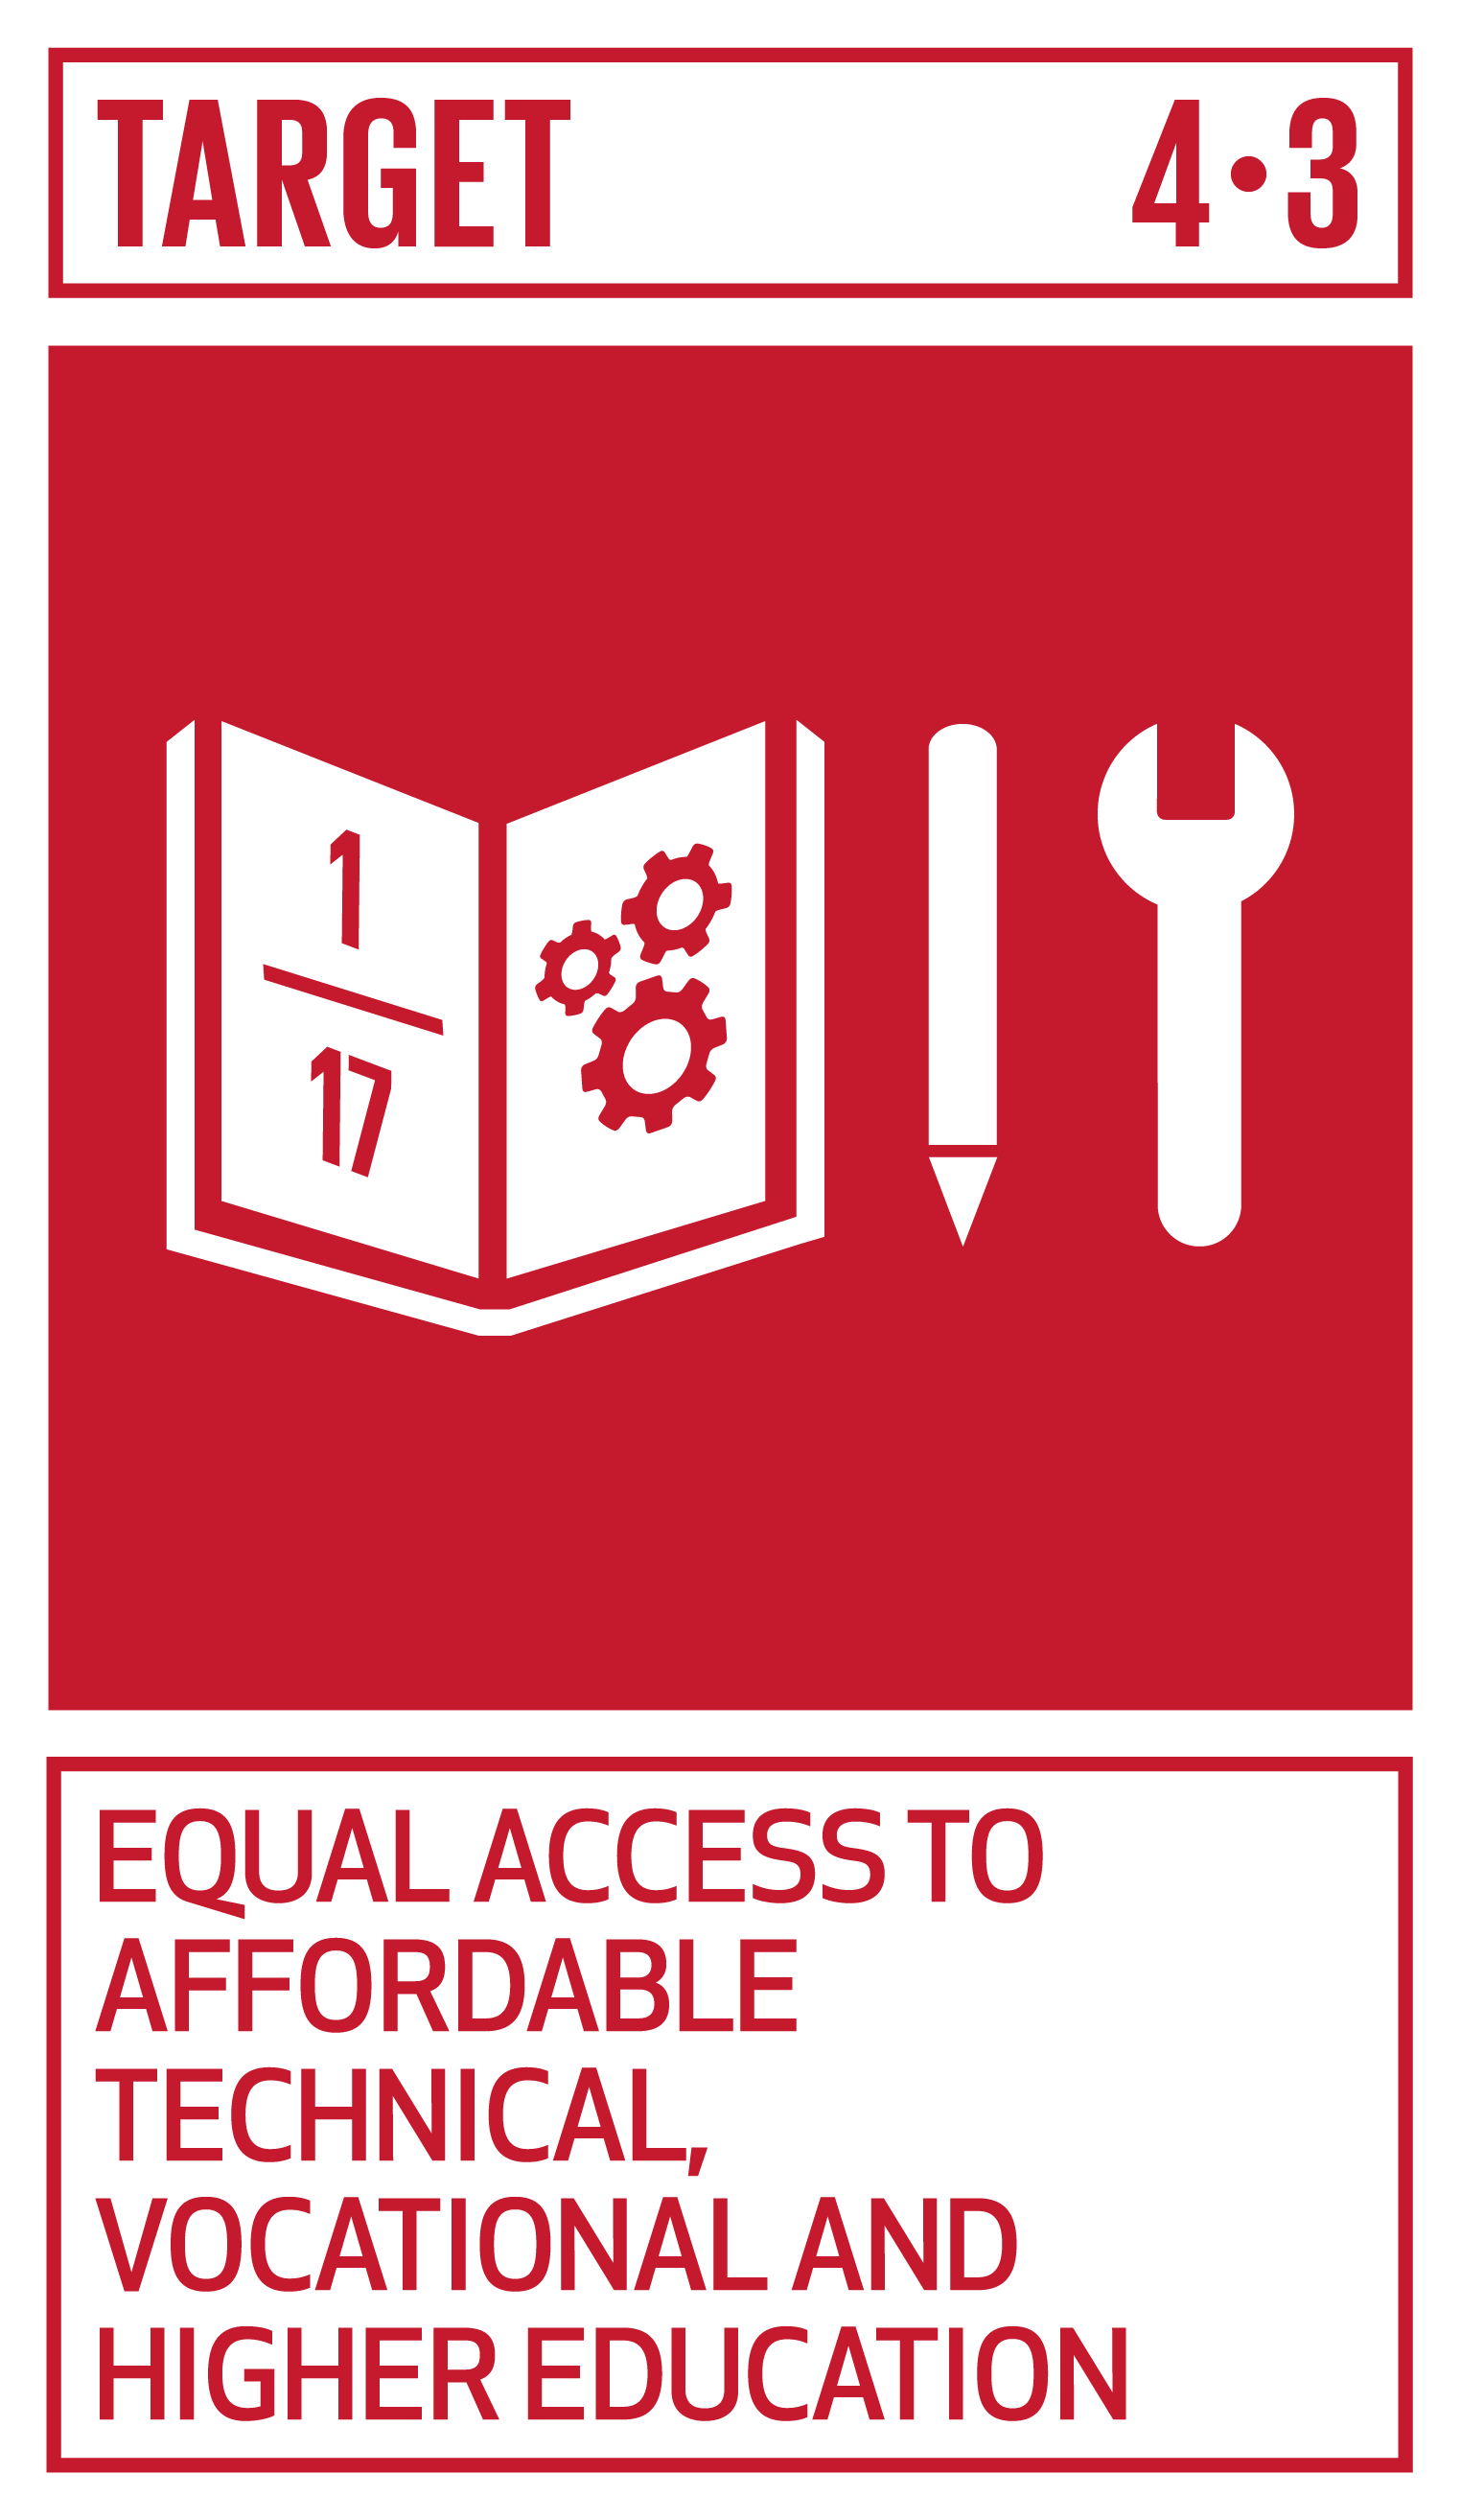 Goal,target,永續發展目標SDGs4目標4.3公平、負擔得起、技職及高品質的教育